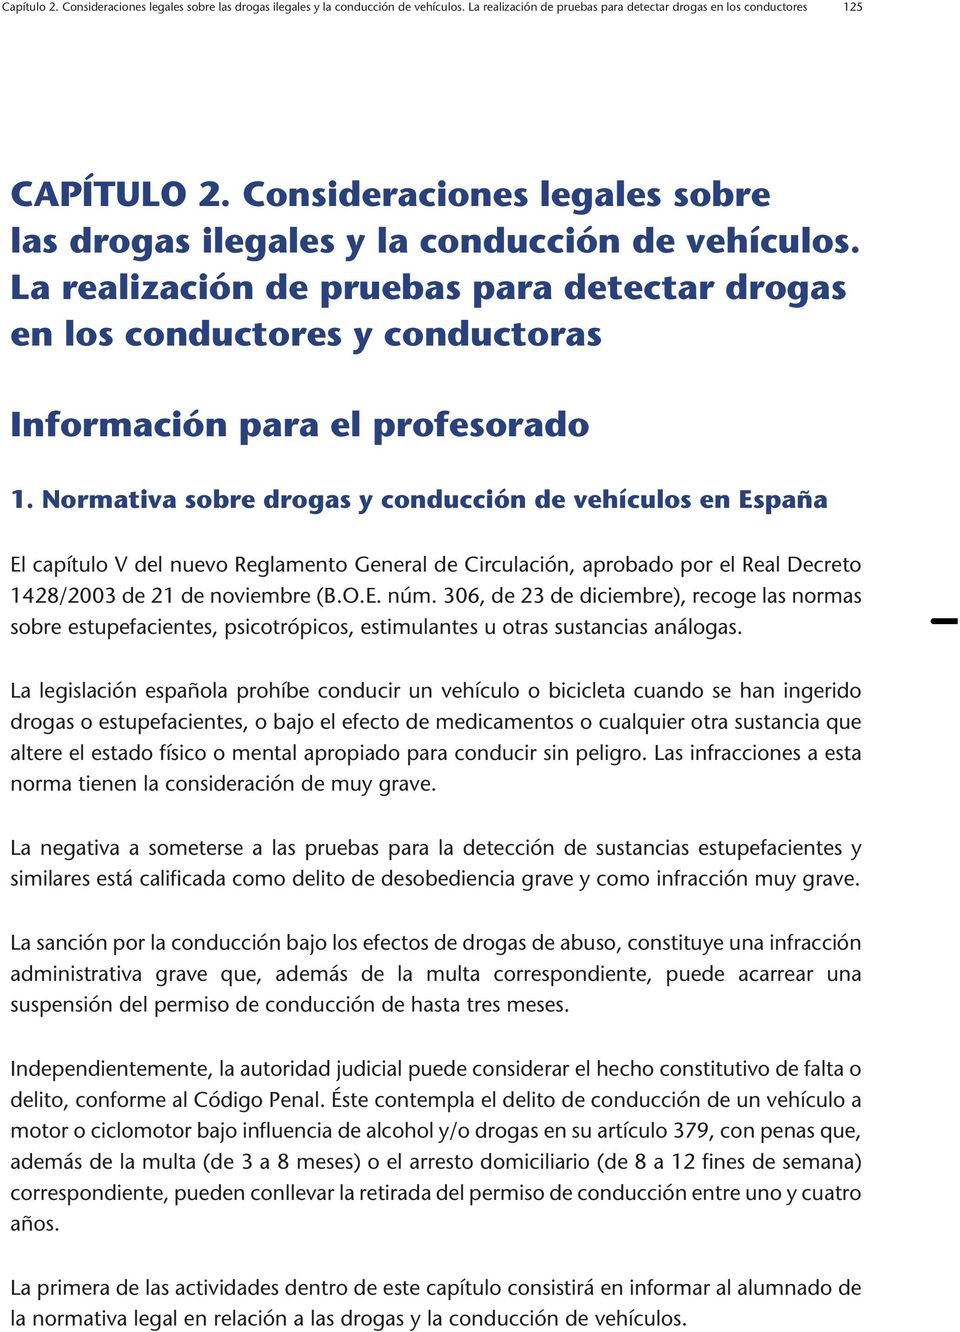 Normativa sobre drogas y conducción de vehículos en España El capítulo V del nuevo Reglamento General de Circulación, aprobado por el Real Decreto 1428/2003 de 21 de noviembre (B.O.E. núm.